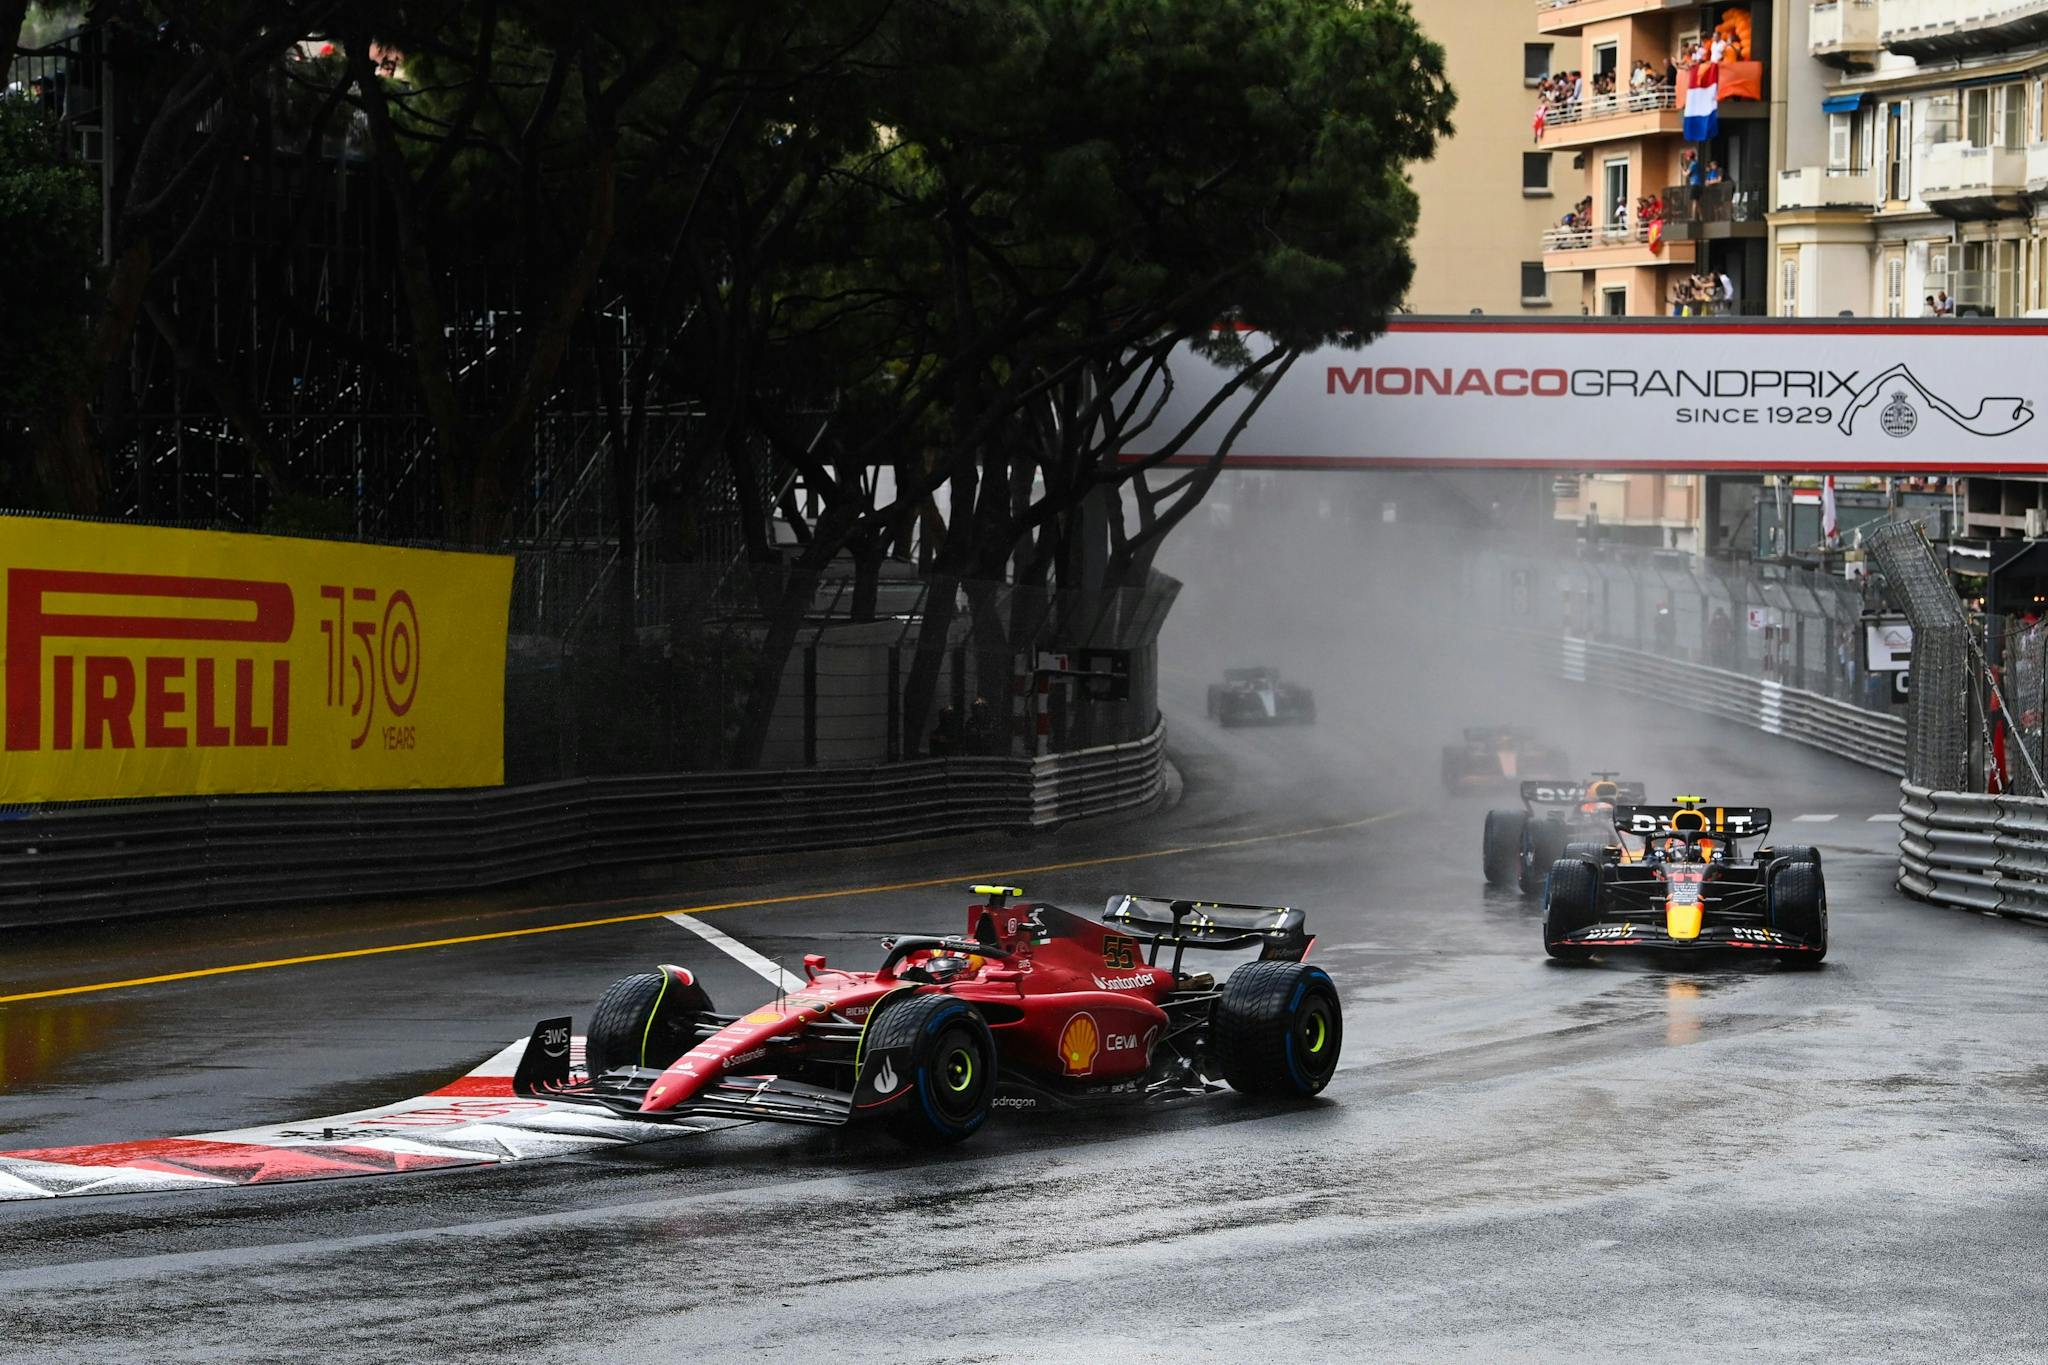 Problemy techniczne wywołały zamieszanie przed startem GP Monako 